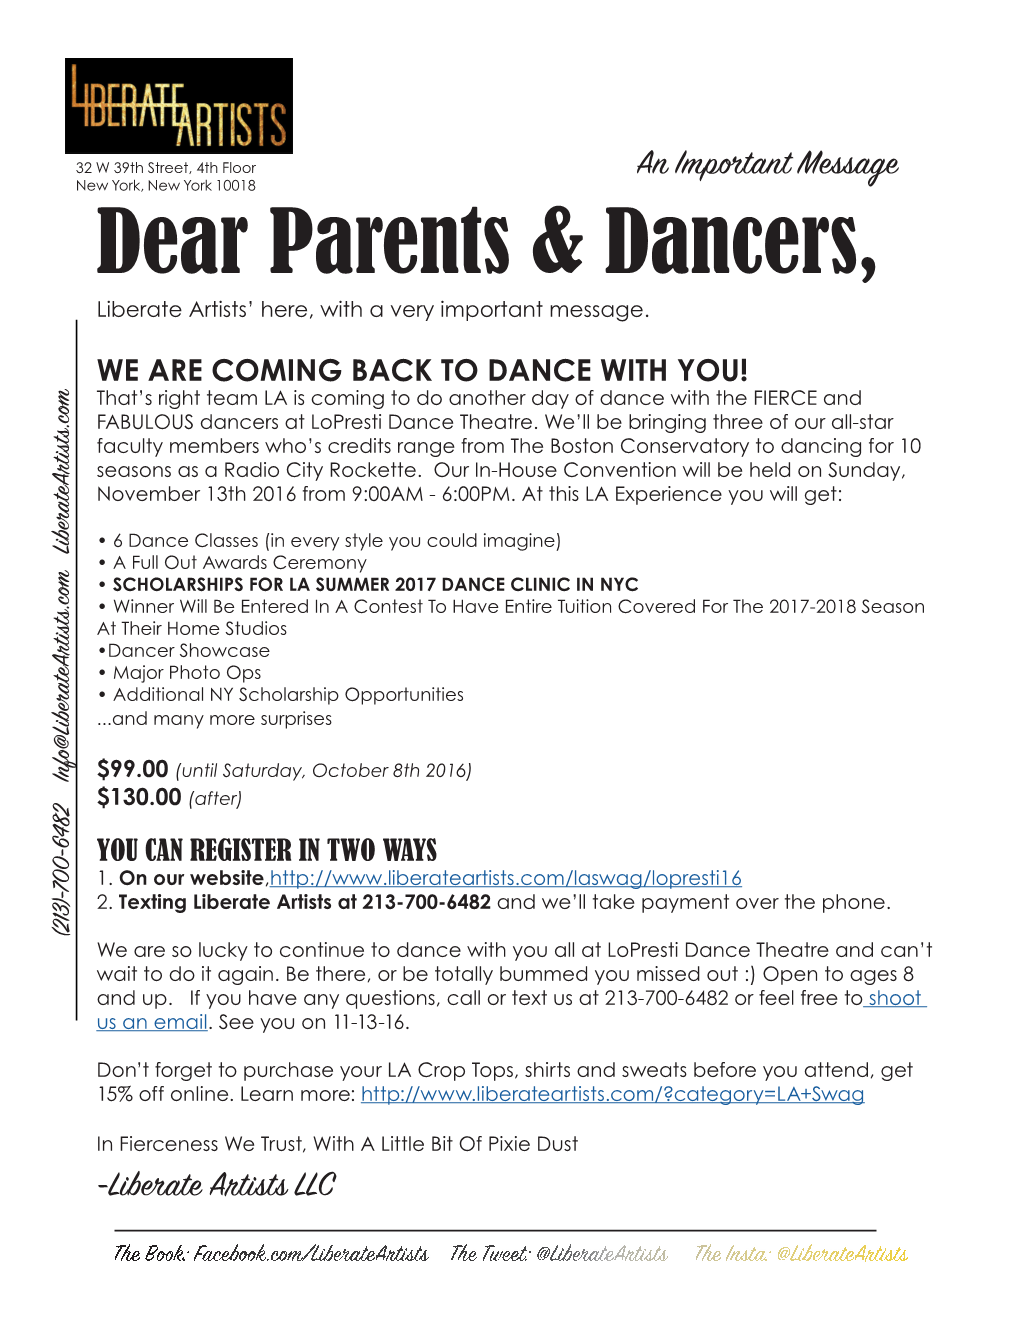 Dear Parents & Dancers